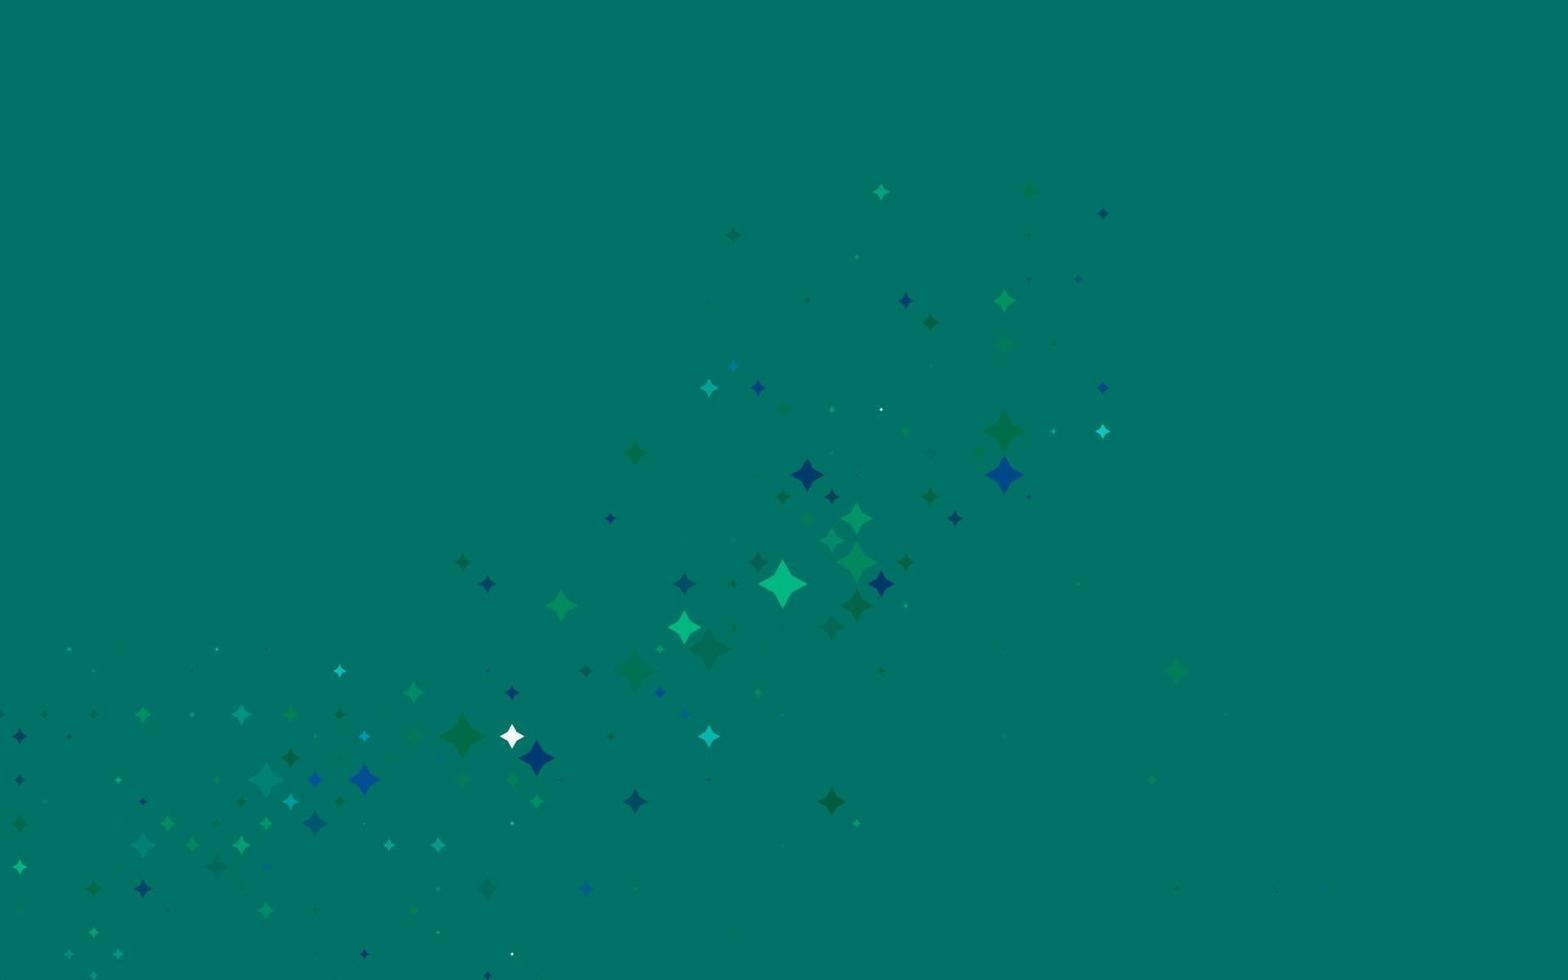 ljusblå, grön vektormall med himmelstjärnor. vektor